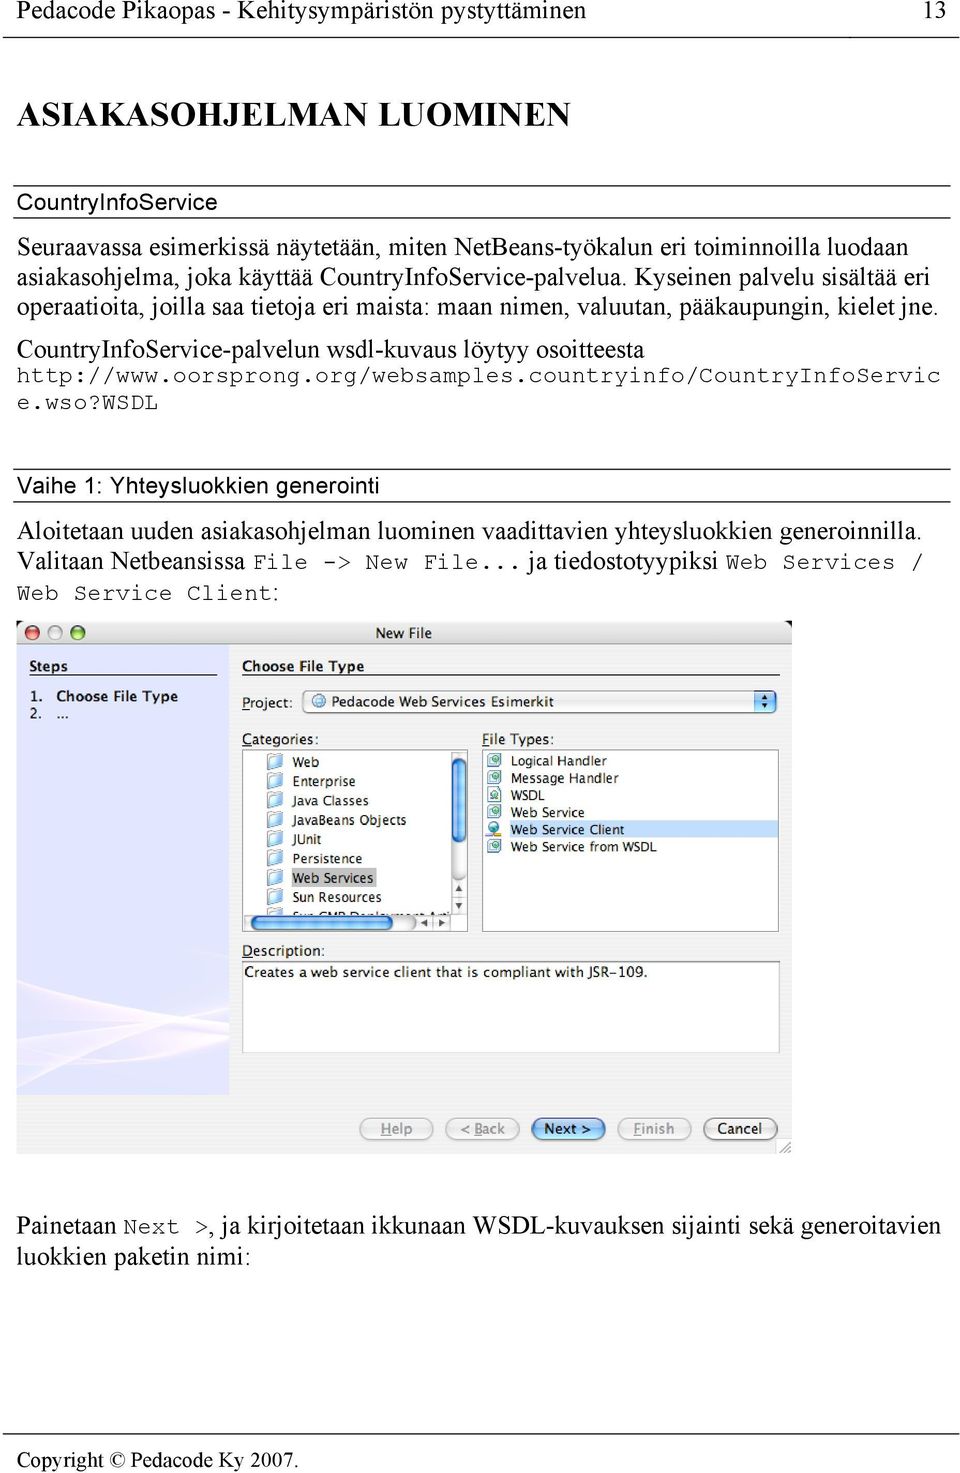 CountryInfoService-palvelun wsdl-kuvaus löytyy osoitteesta http://www.oorsprong.org/websamples.countryinfo/countryinfoservic e.wso?